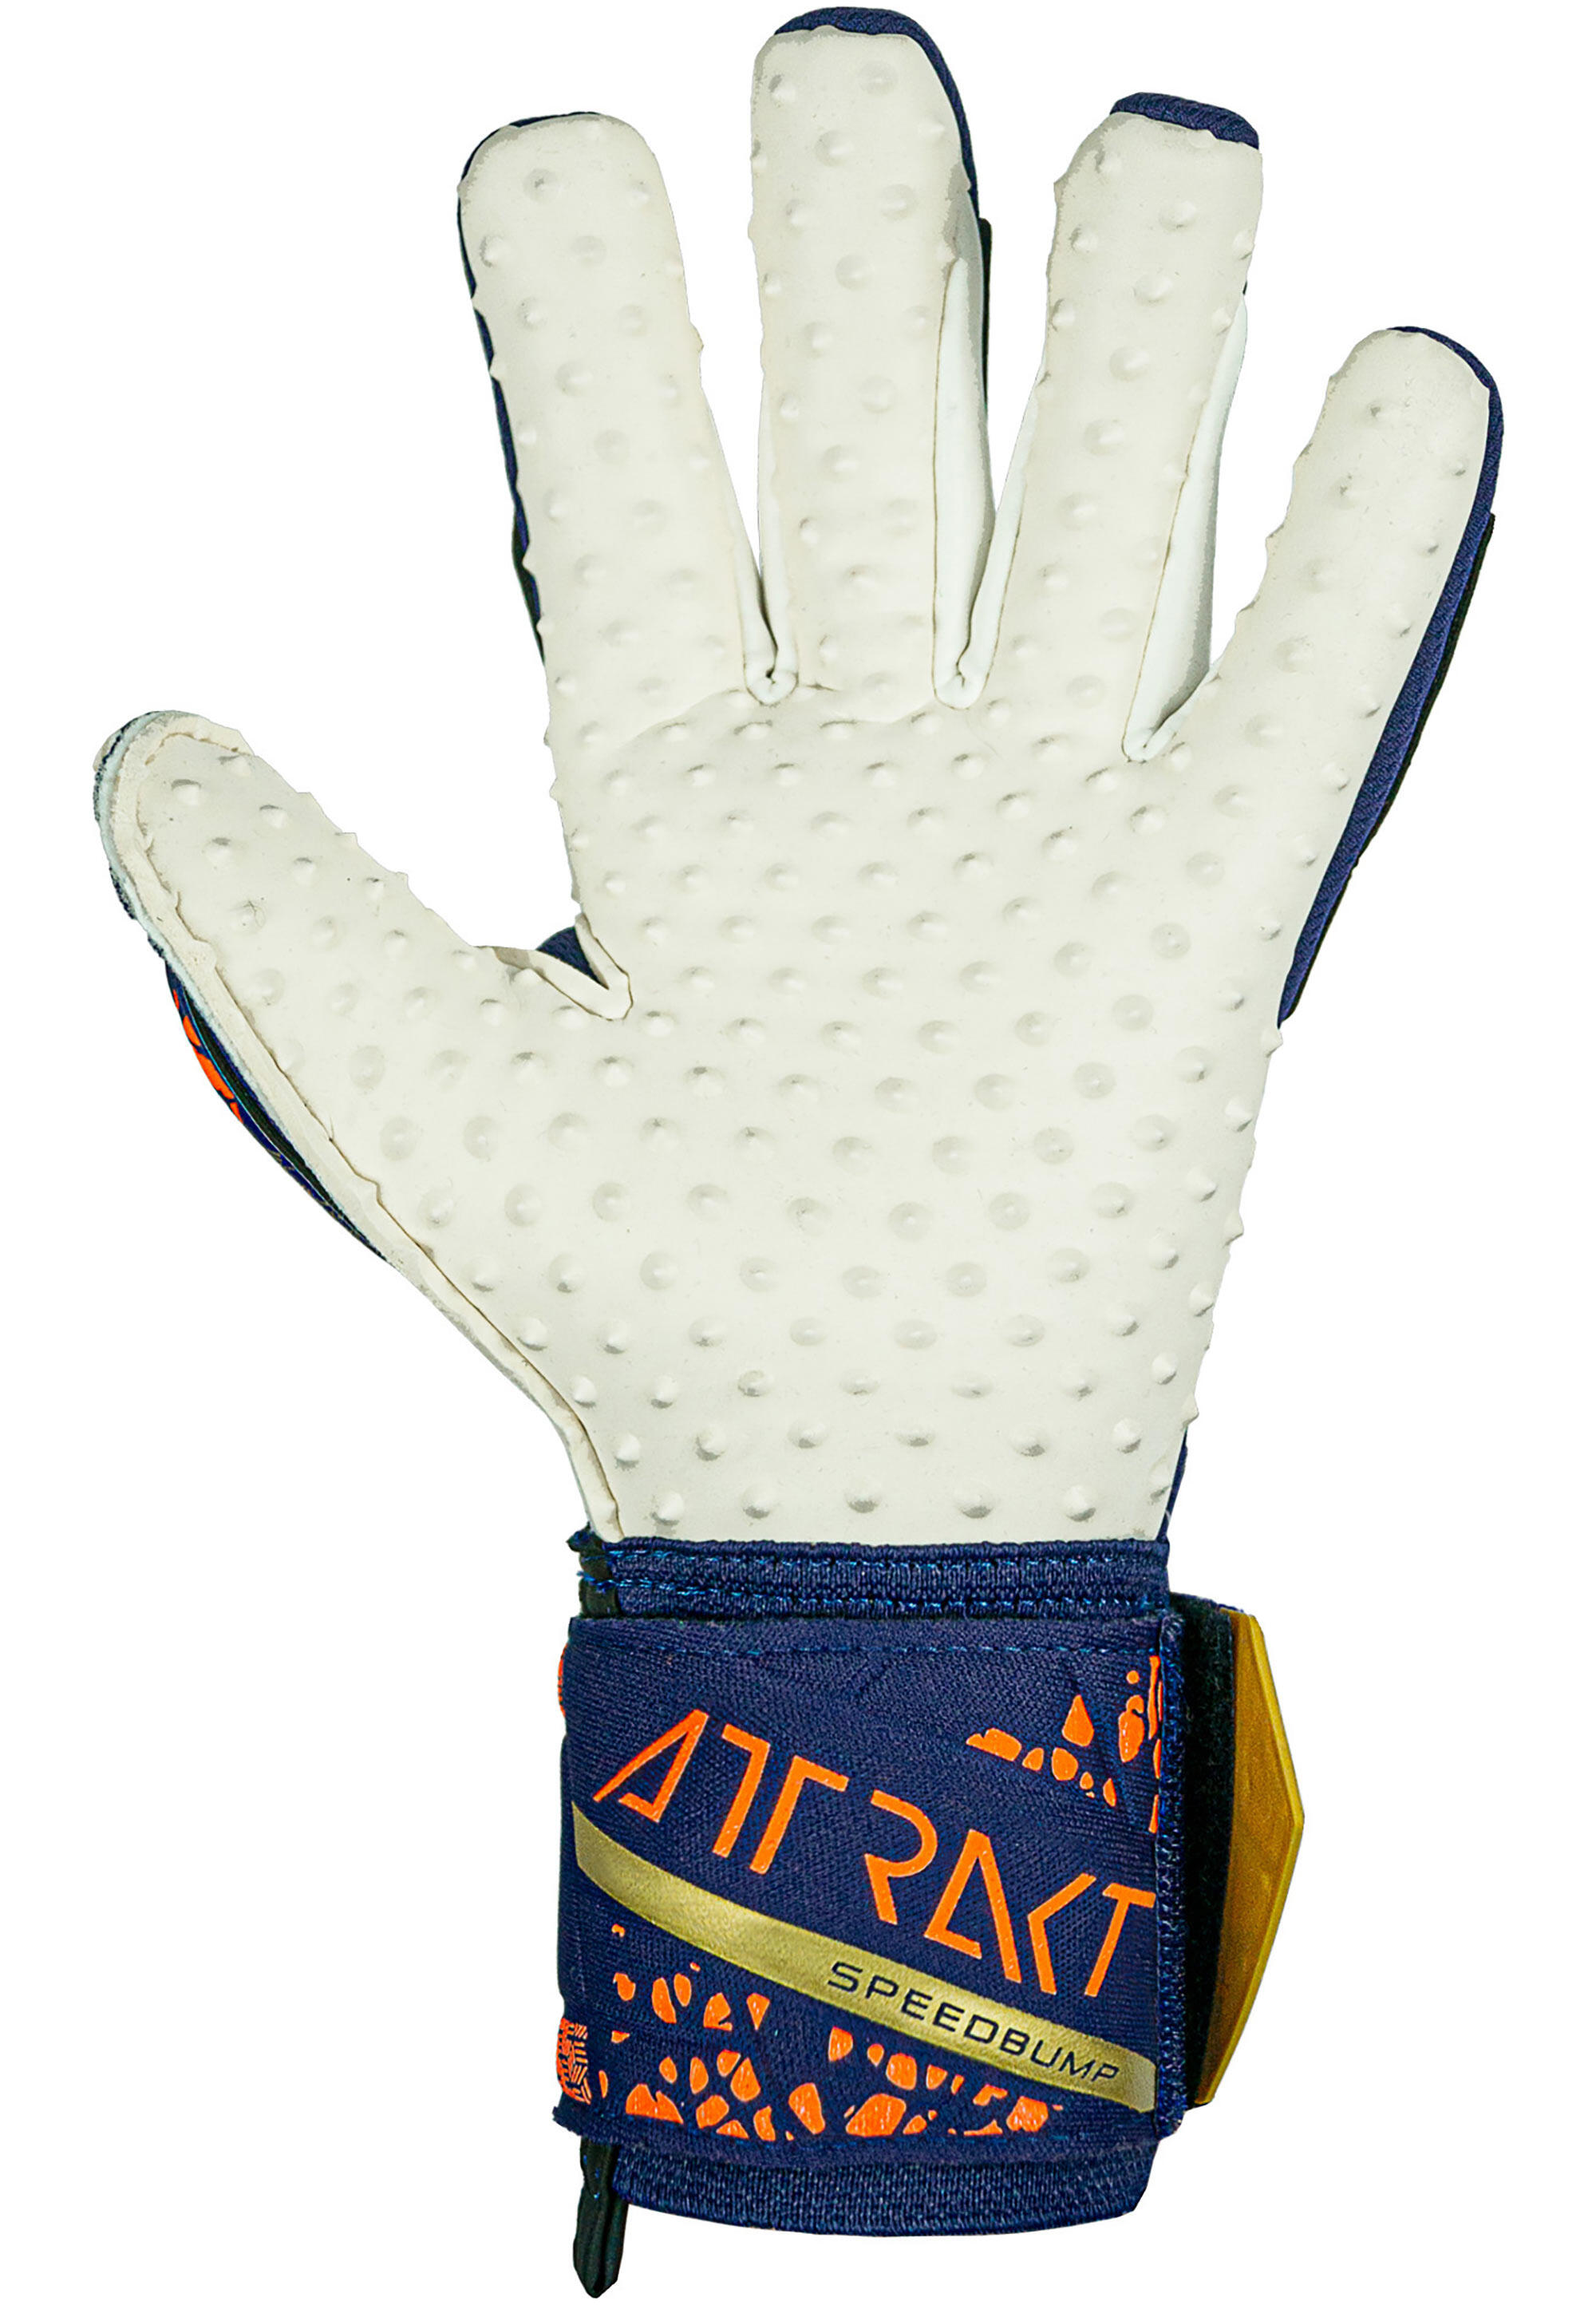 Reusch Attrakt SpeedBump Goalkeeper Gloves 3/7